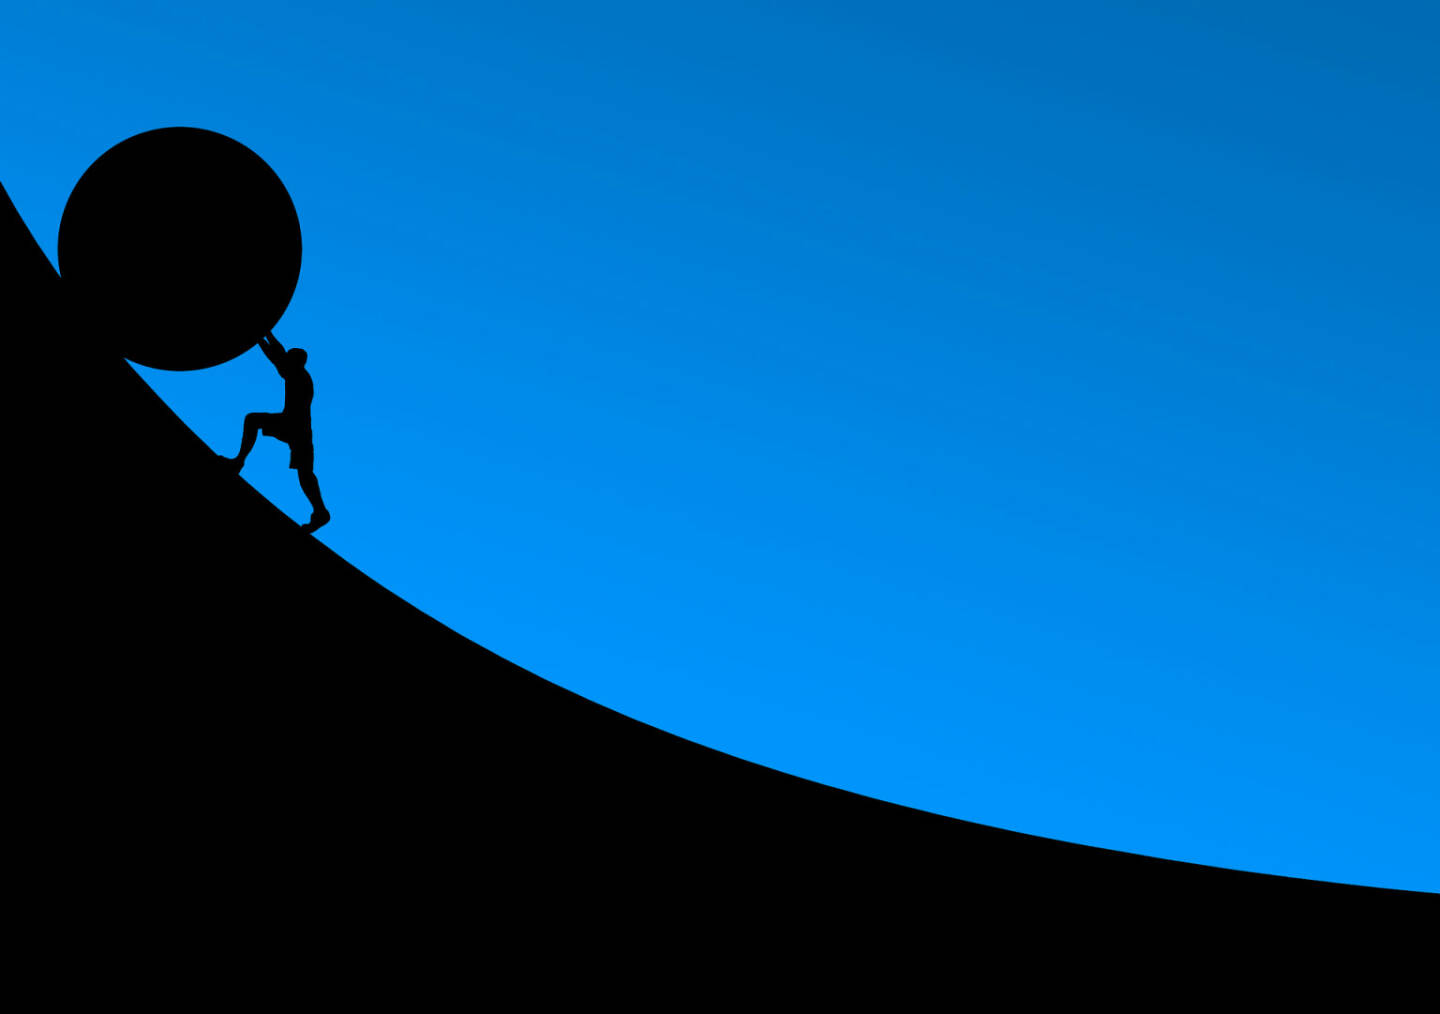 Widerstand, Gegenwind, Mühsam, Schwer, Aufgabe, Herausforderung (Bild: Pixabay/NeuPaddy https://pixabay.com/de/überwindung-stein-rollen-schieben-2127669/ )